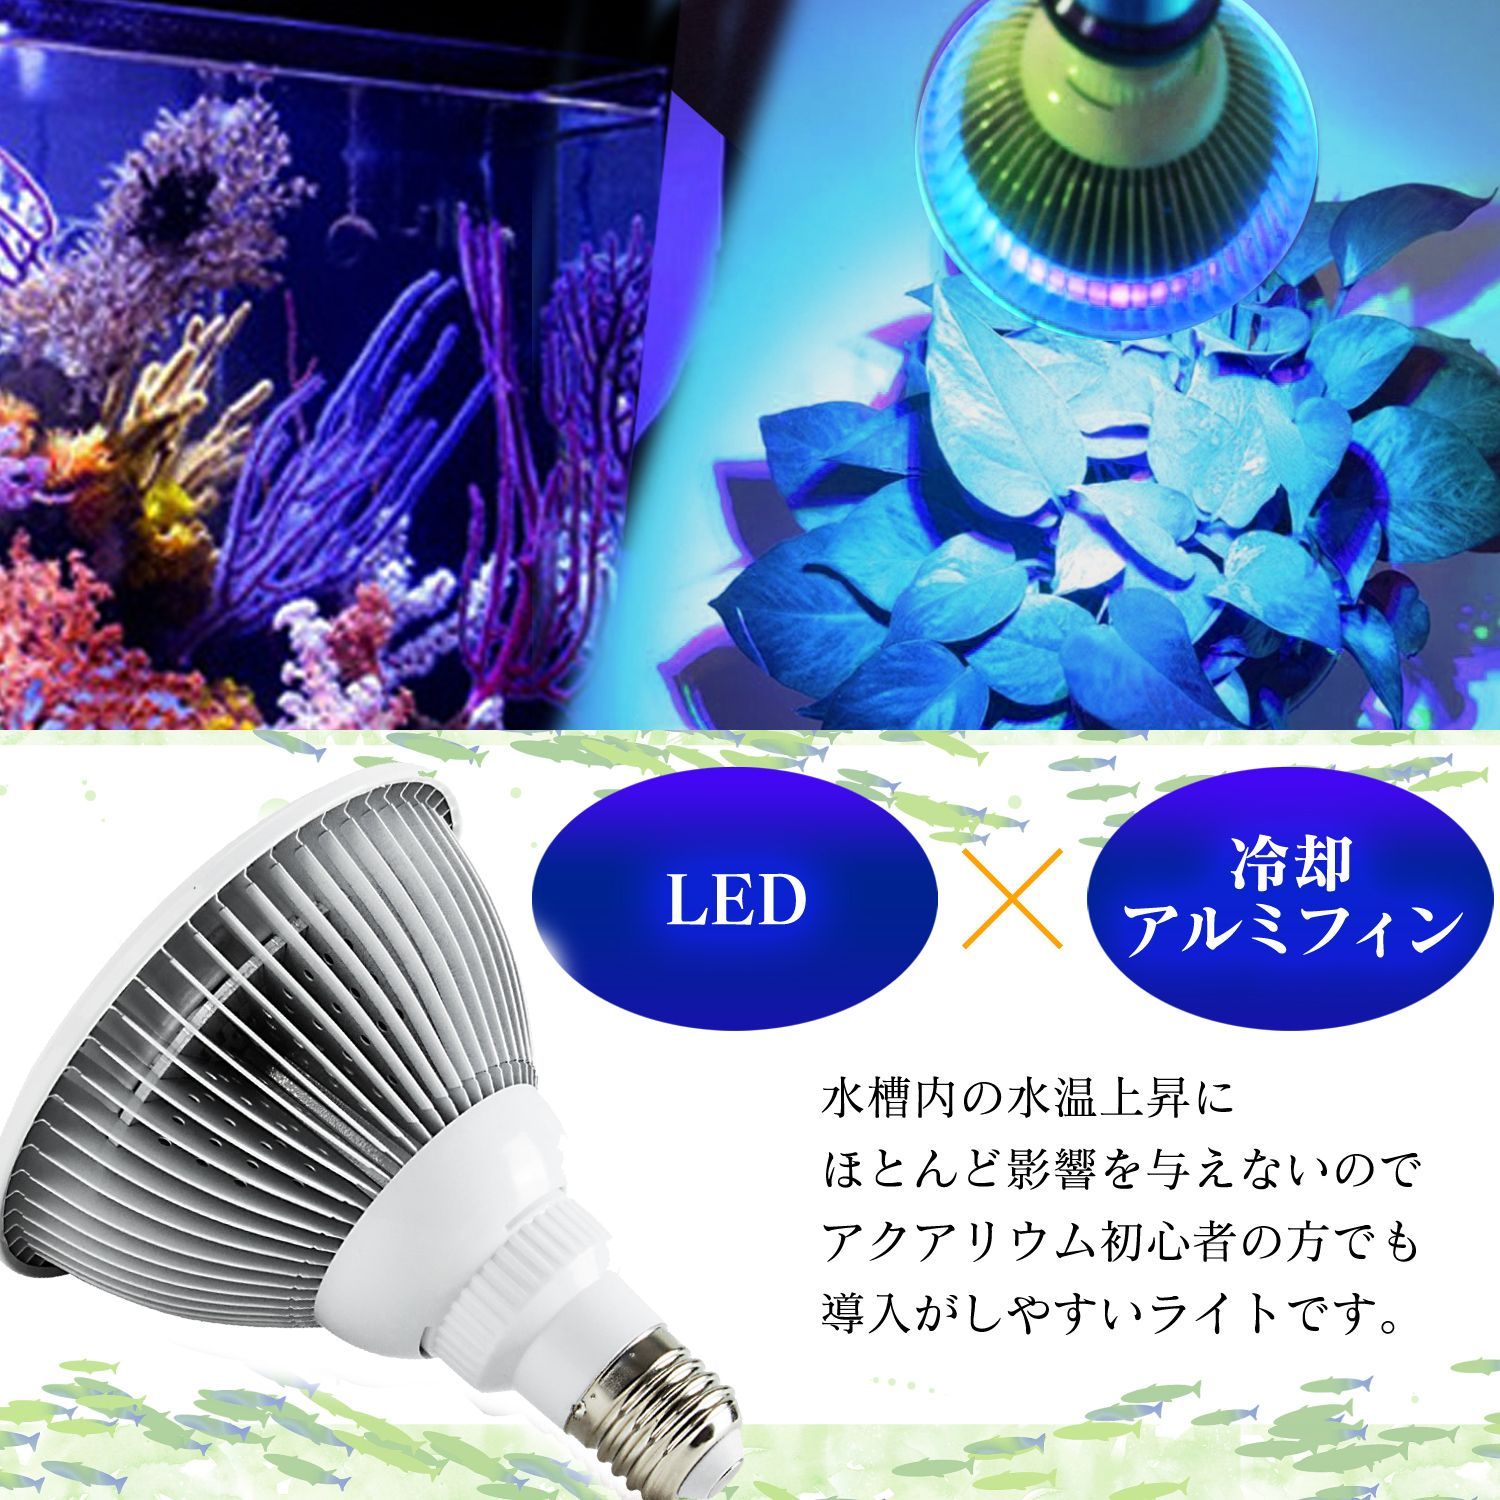 【送料無料】アクアリウム 電球 12LED 青12 水槽 用 24W スポット ライト E26 口金 照明 交換 植物育成 水草 サンゴ 熱帯魚 照射角90度